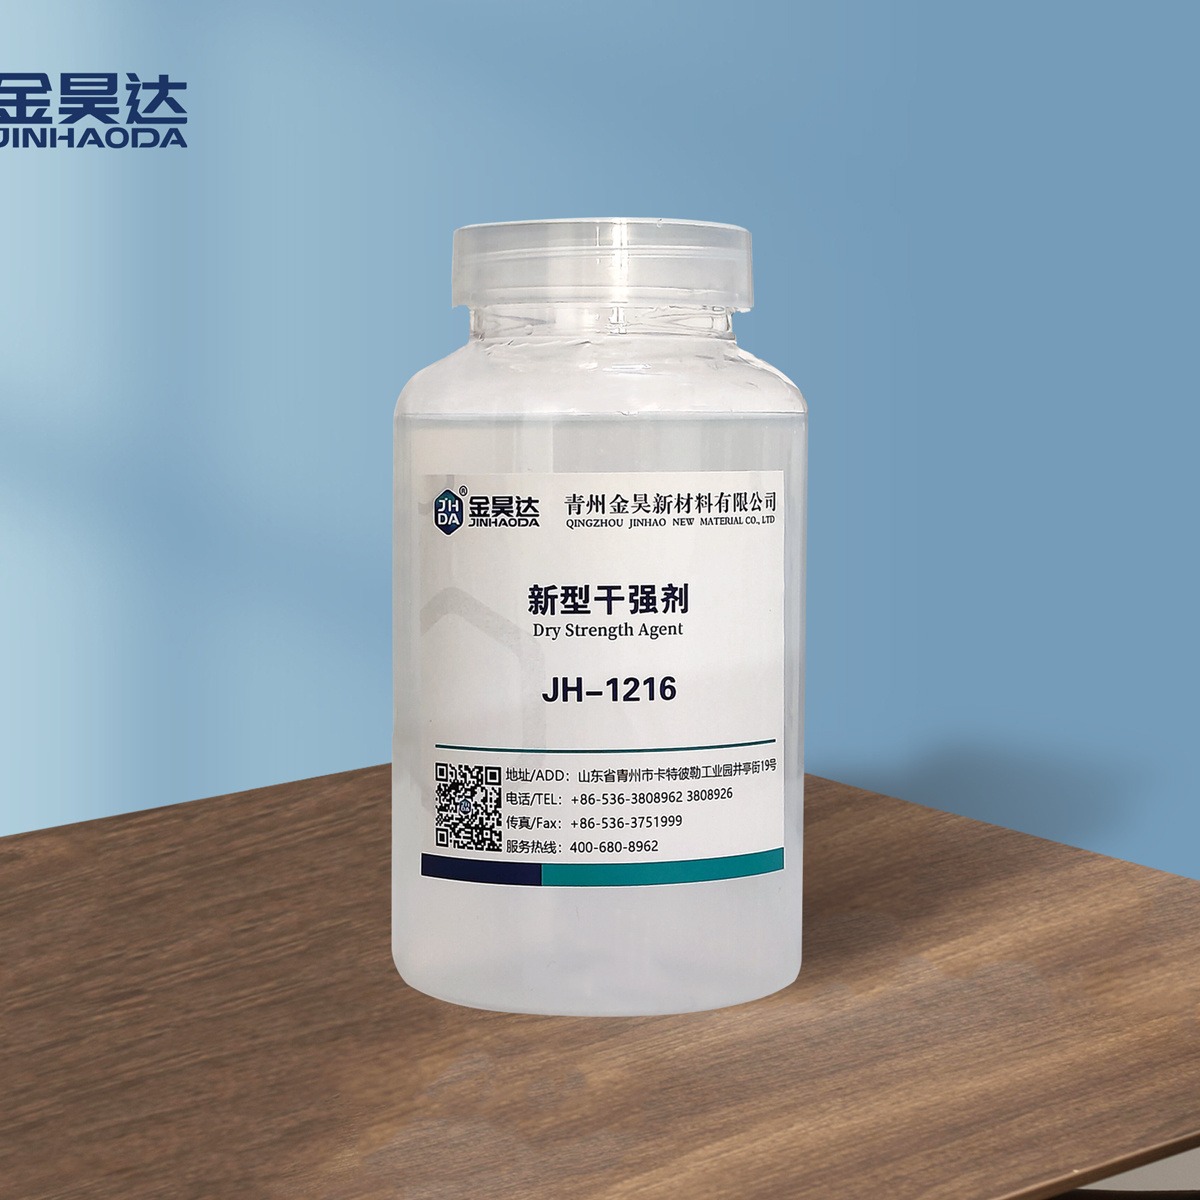 金昊JH-1216新型纸张干强剂 抗水助剂 有效提高纤维间的结合强度